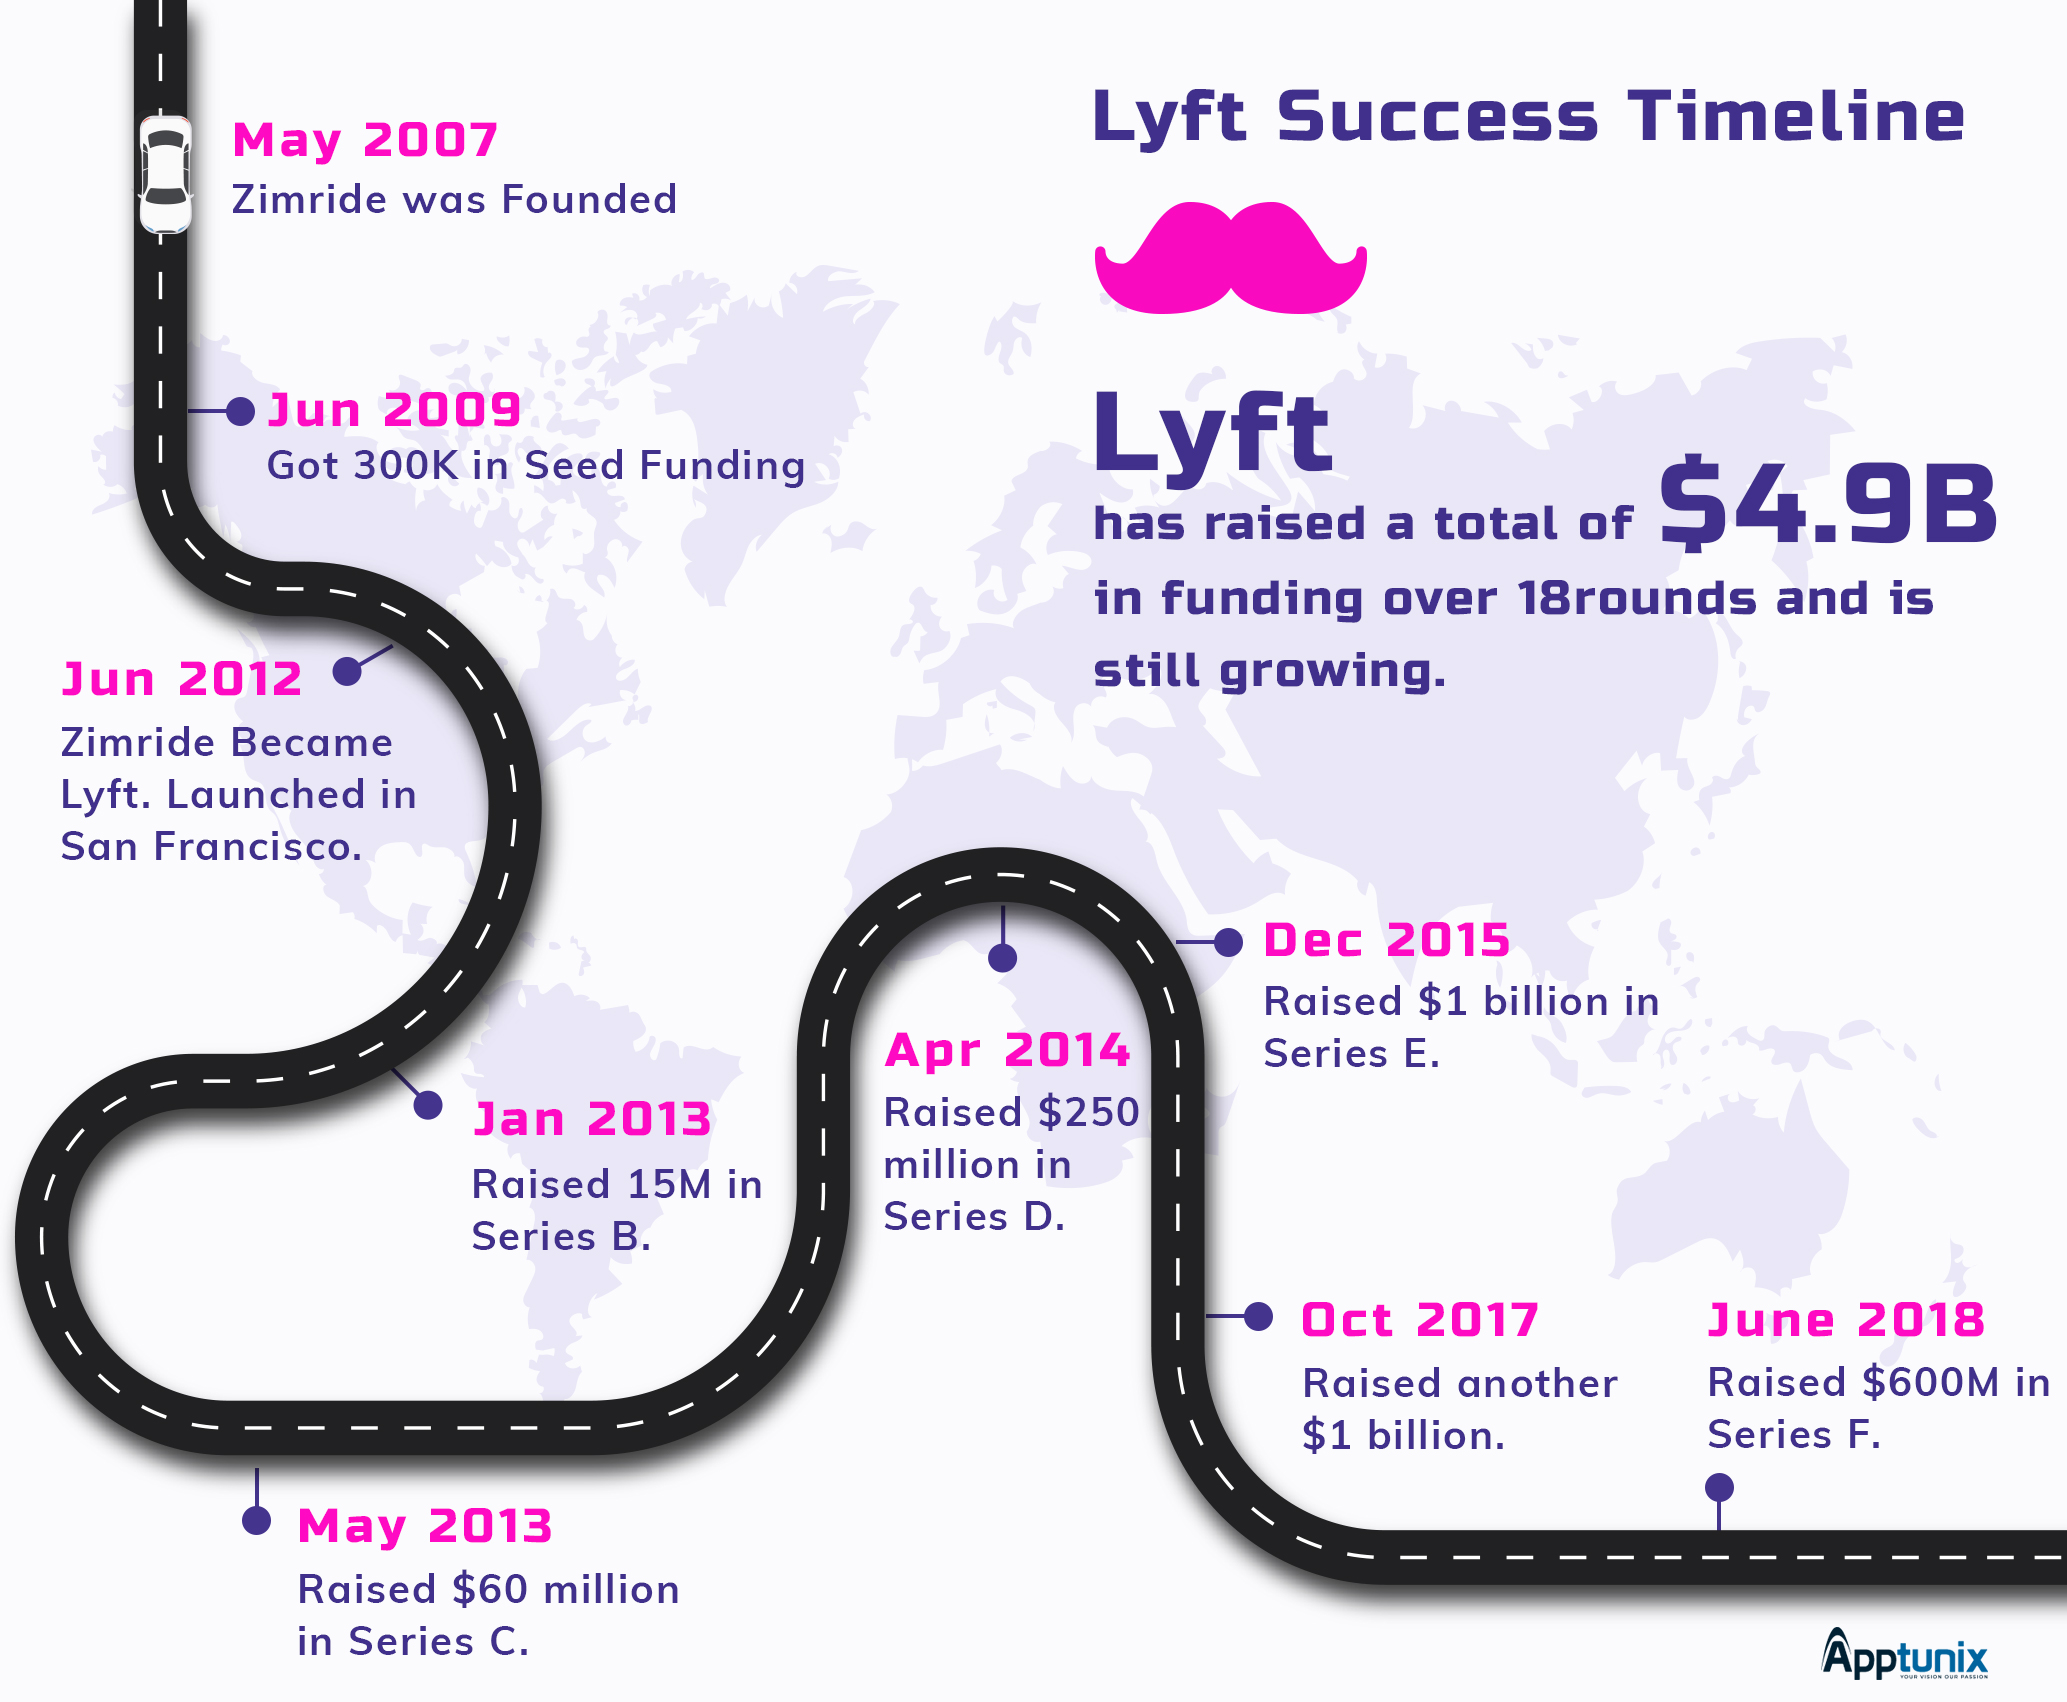 Lyft Success Timeline